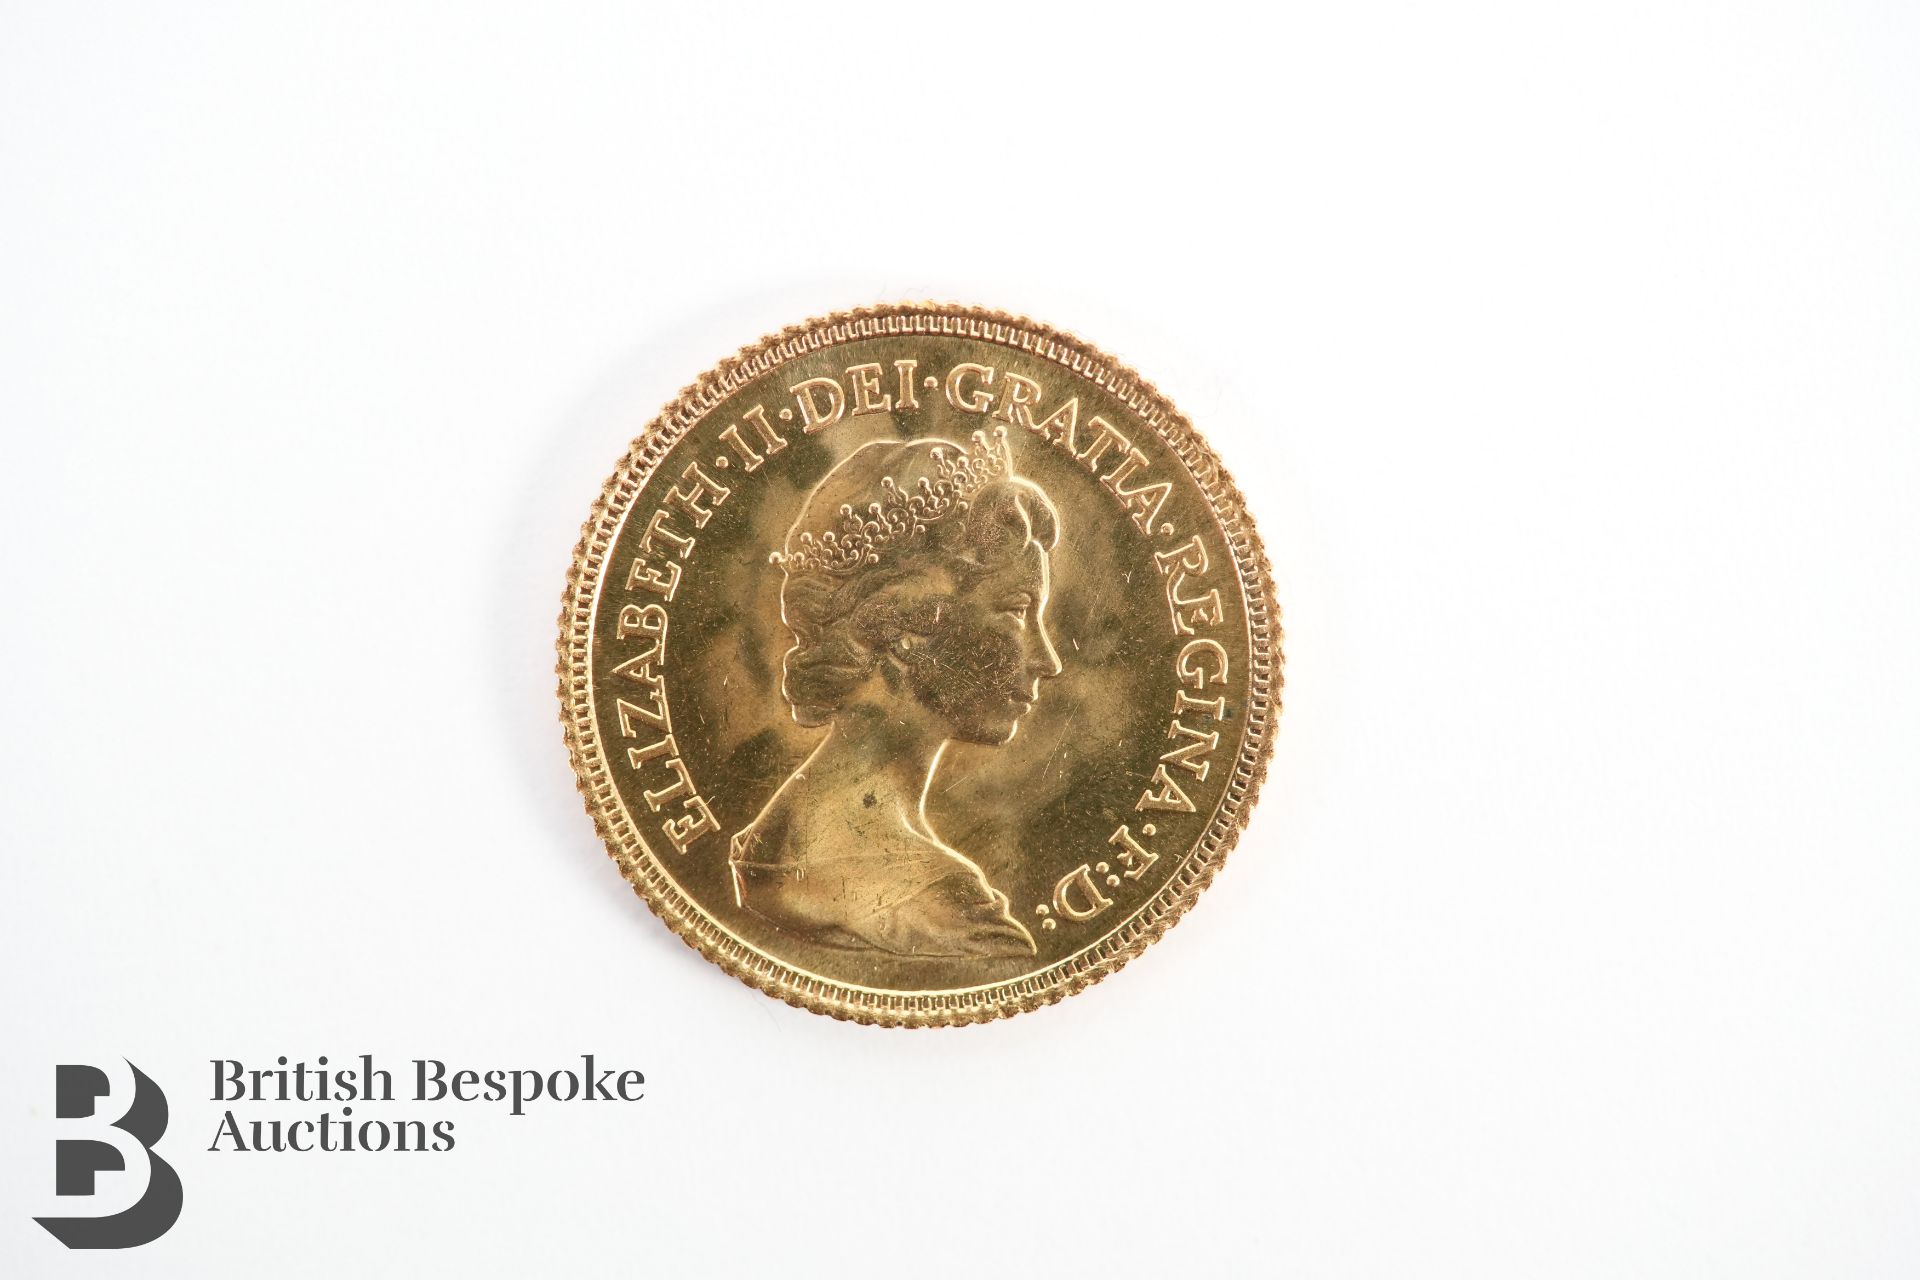 Elizabeth II 1982 Gold Half Sovereign - Image 2 of 2